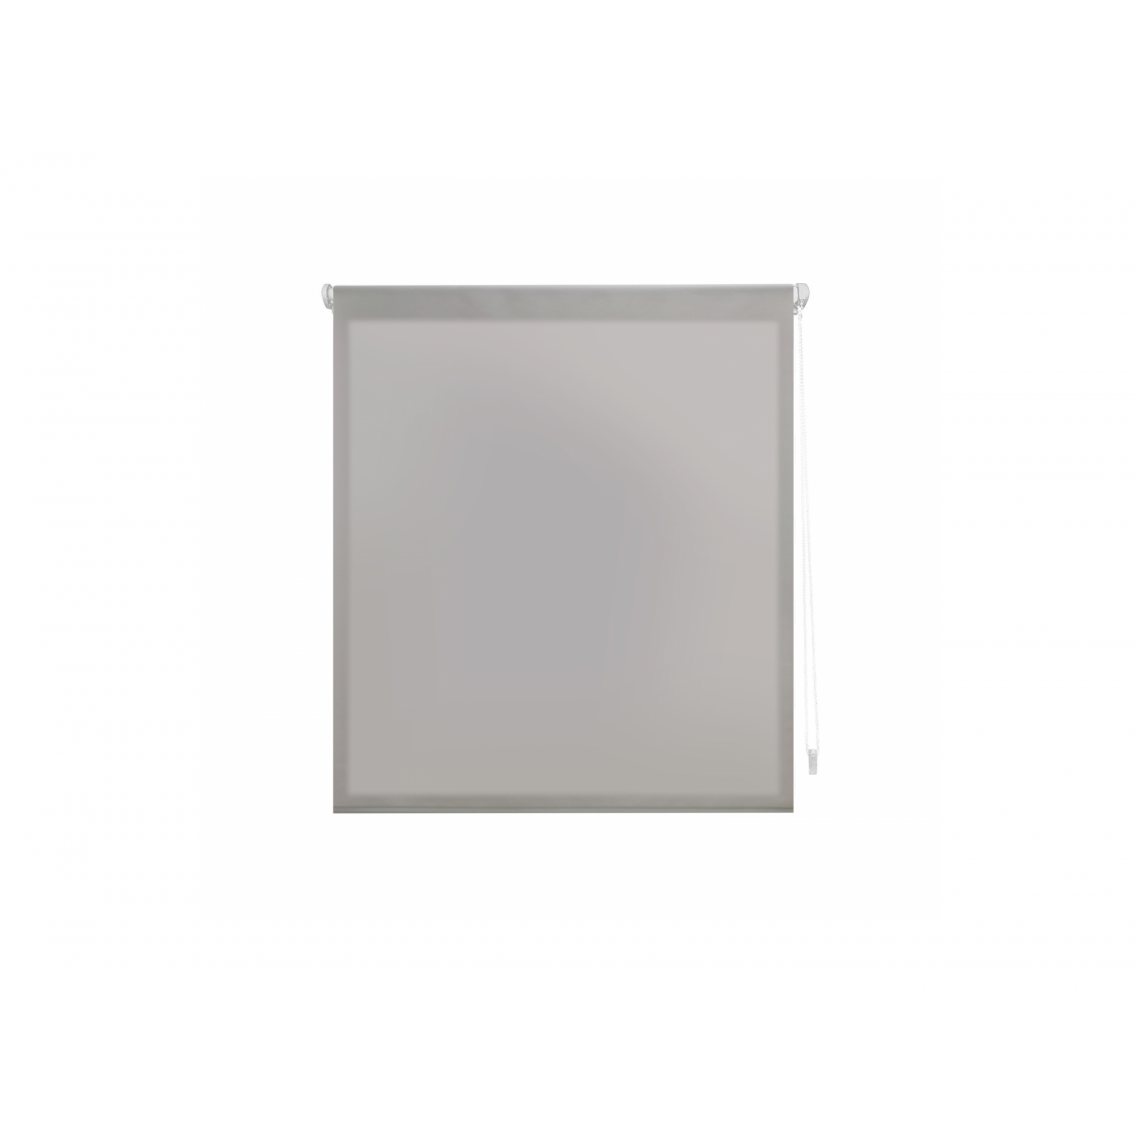 Purline - Store enrouleur 37X180 ARGENT Translucide EASY FIX, Assemblage facile par des pinces de cadre de fenêtre ou un adhésif - Store compatible Velux